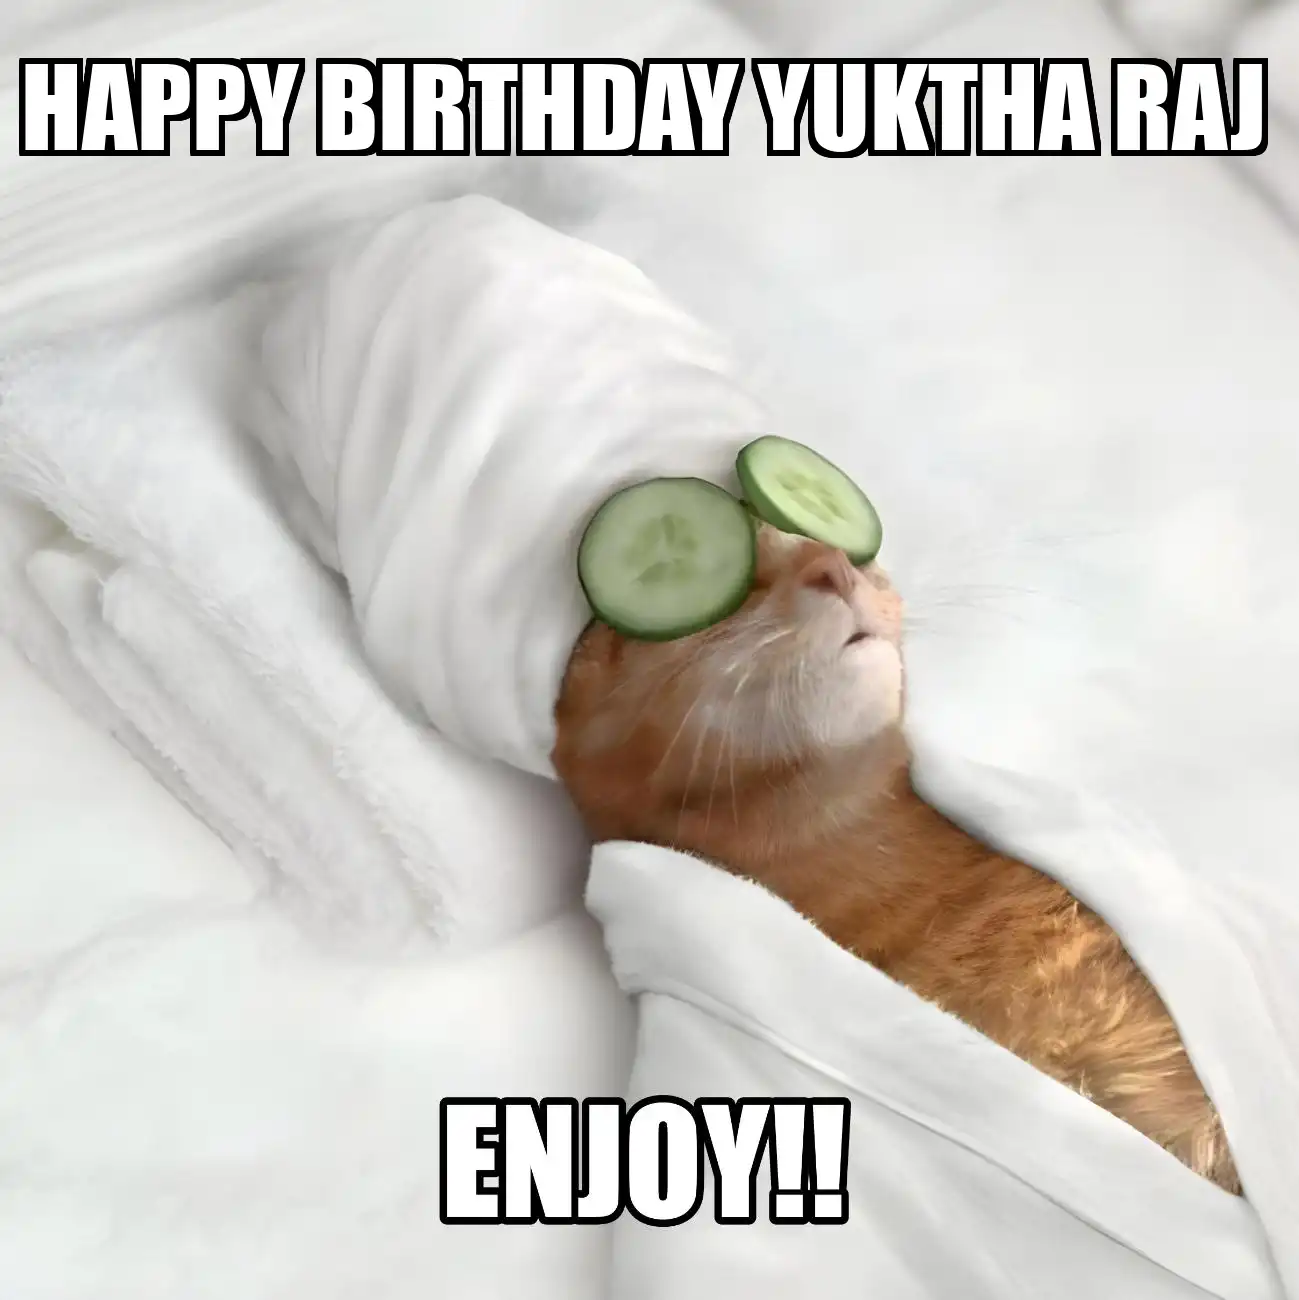 Happy Birthday Yuktha raj Enjoy Cat Meme